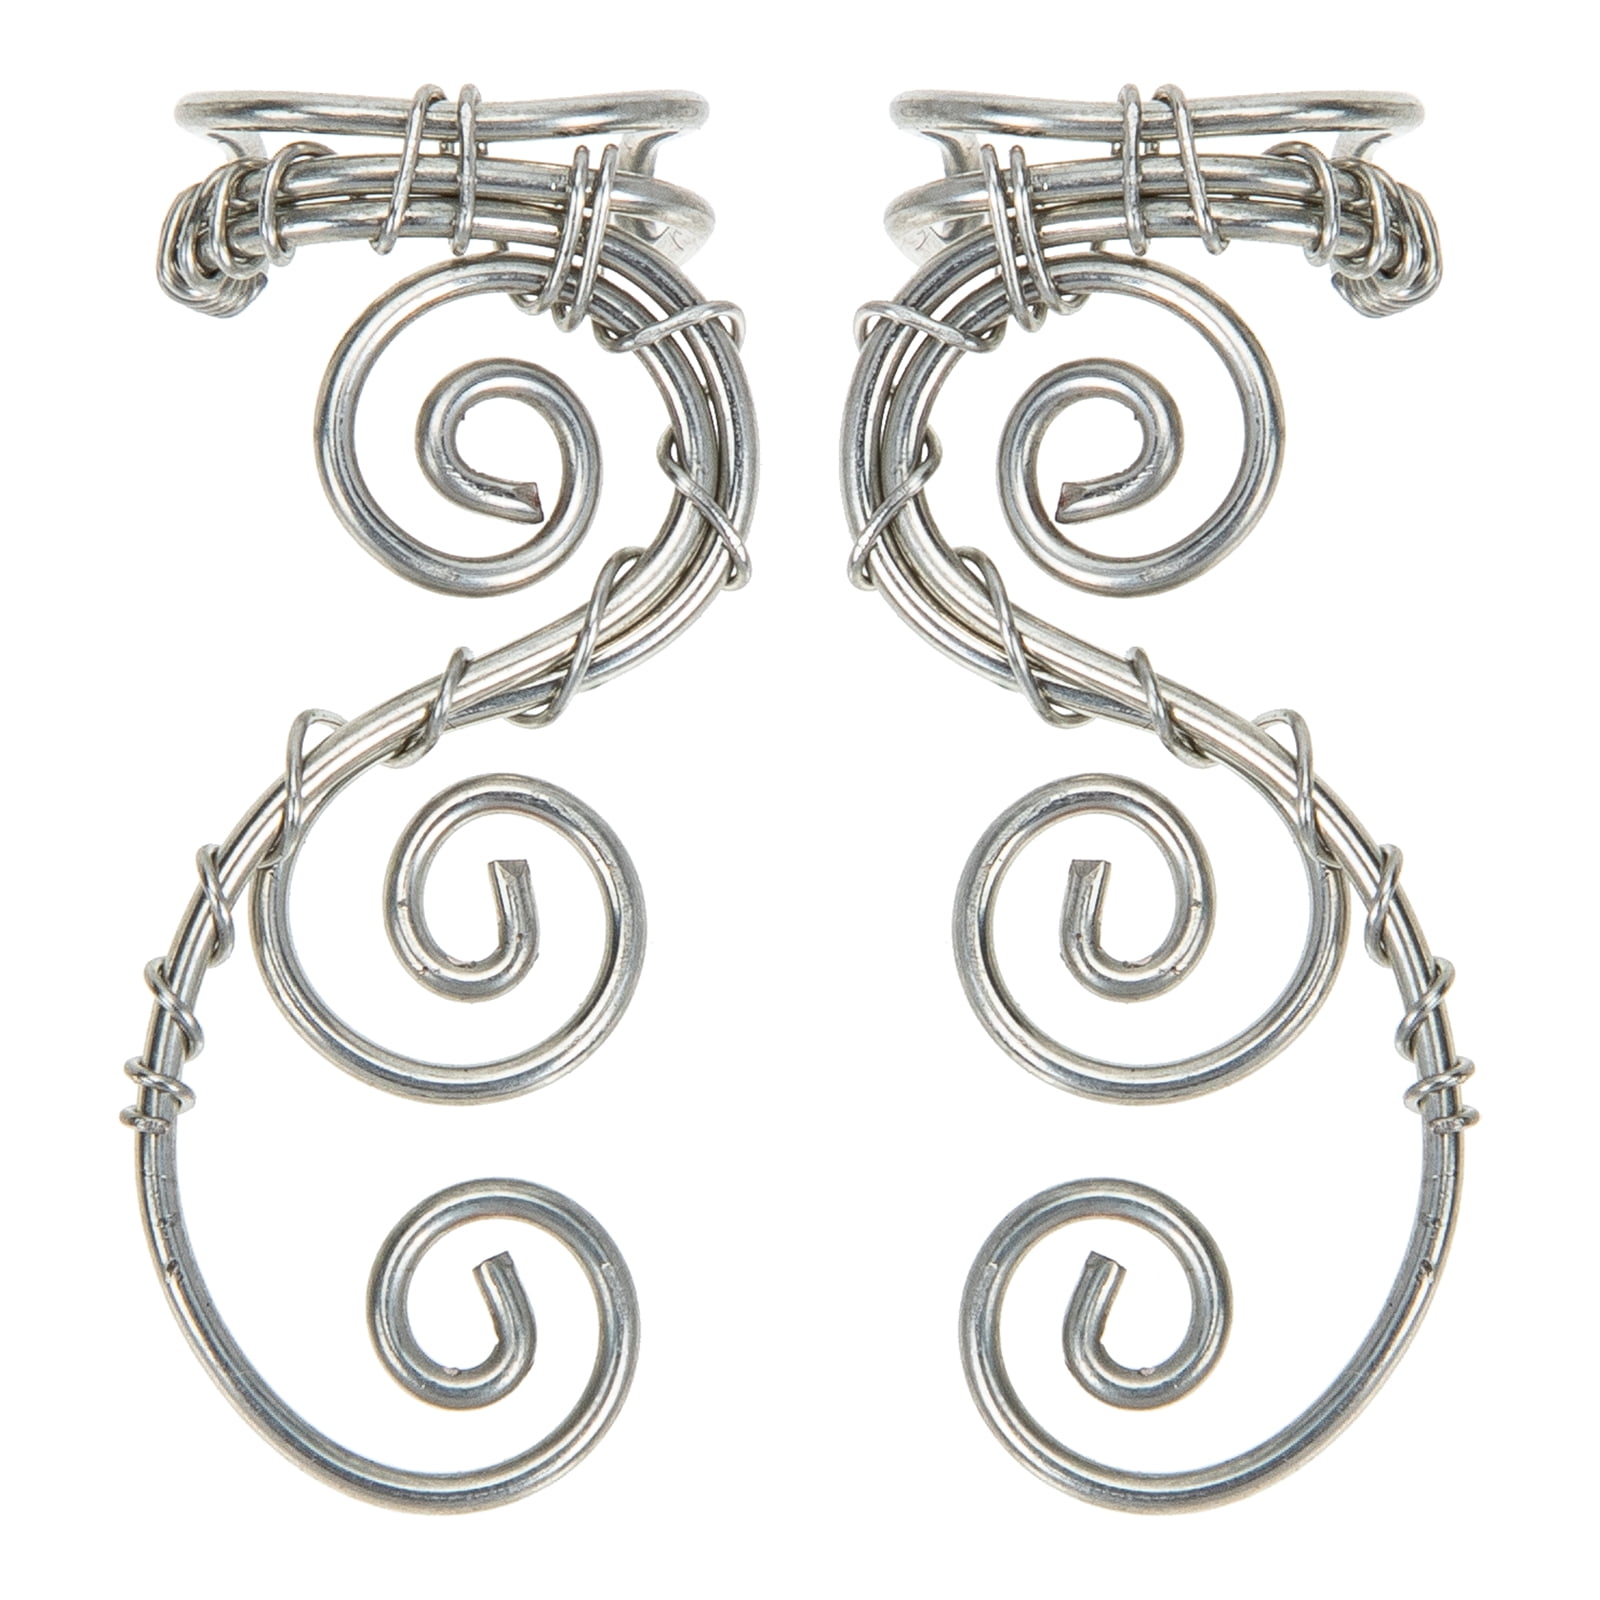 Jewelry Earrings Jewelry Ear Piece U Temperament Pearl Ear Earrings Shaped  Design Hook Small Earrings Accessories for Women 